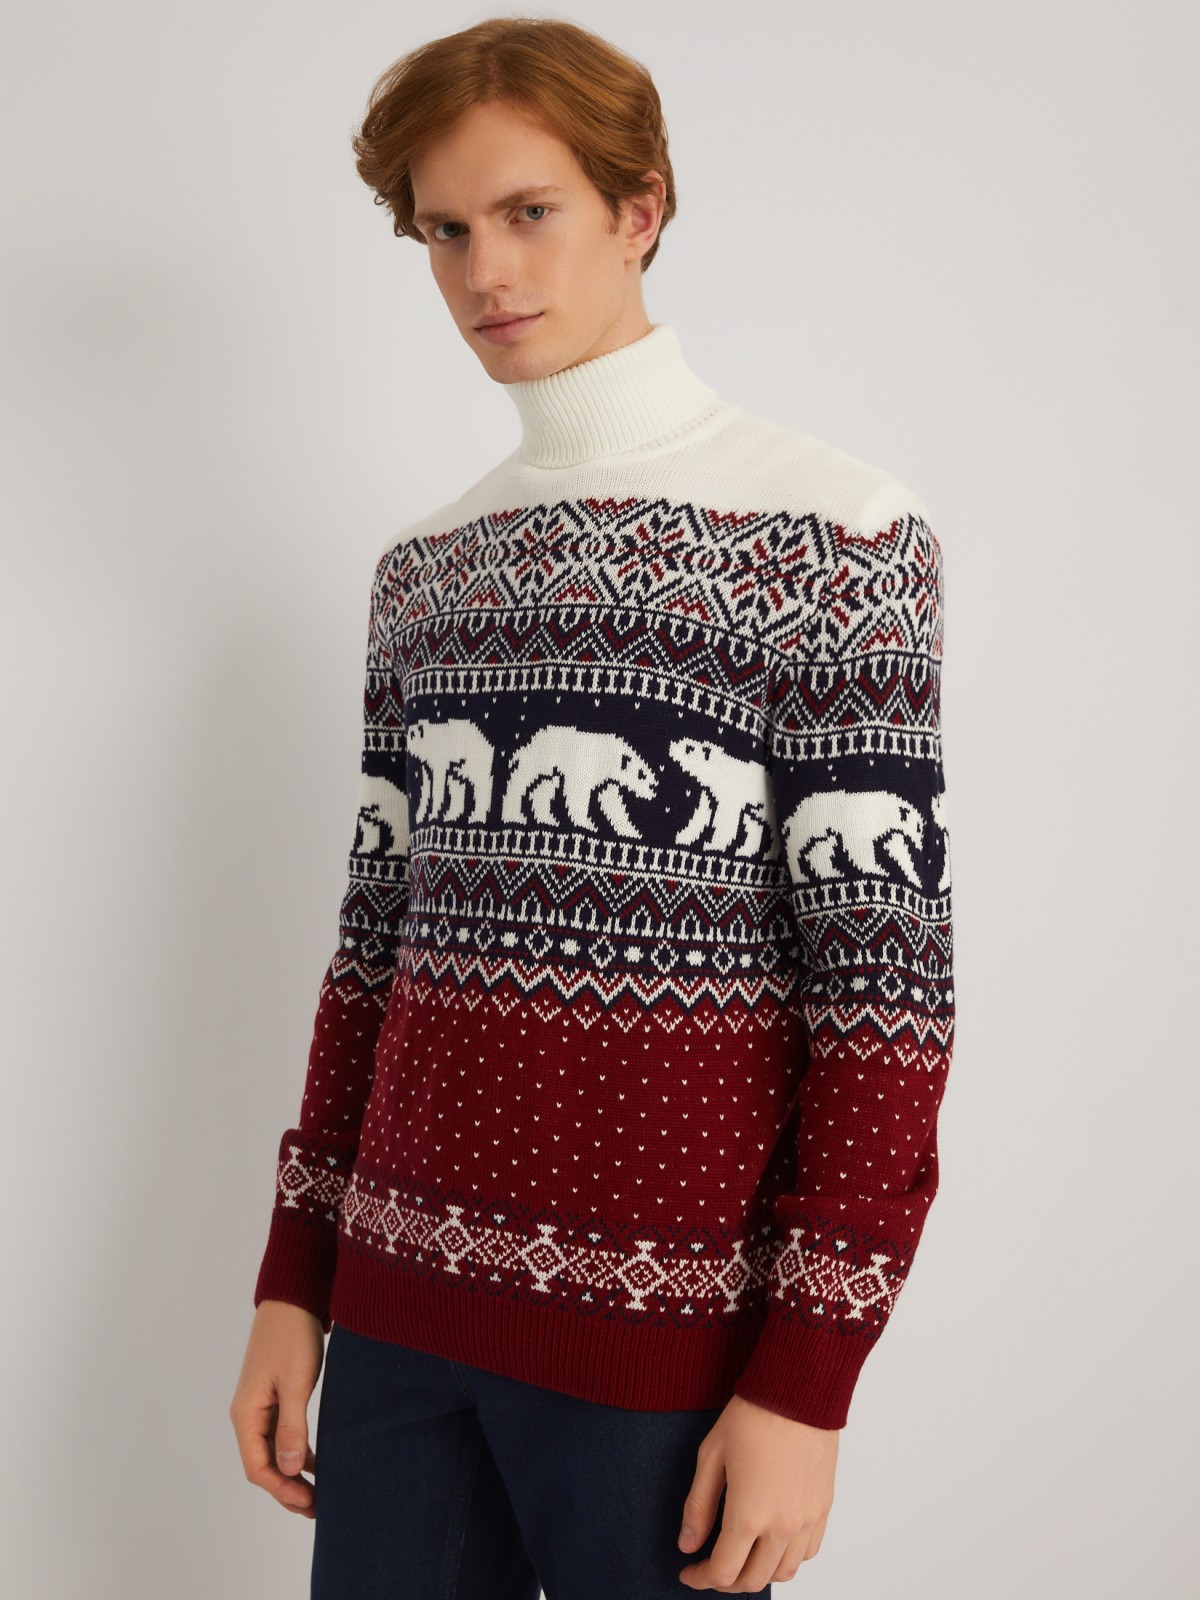 Вязаный свитер из акрила со скандинавским узором zolla 013446101013, цвет бордо, размер M